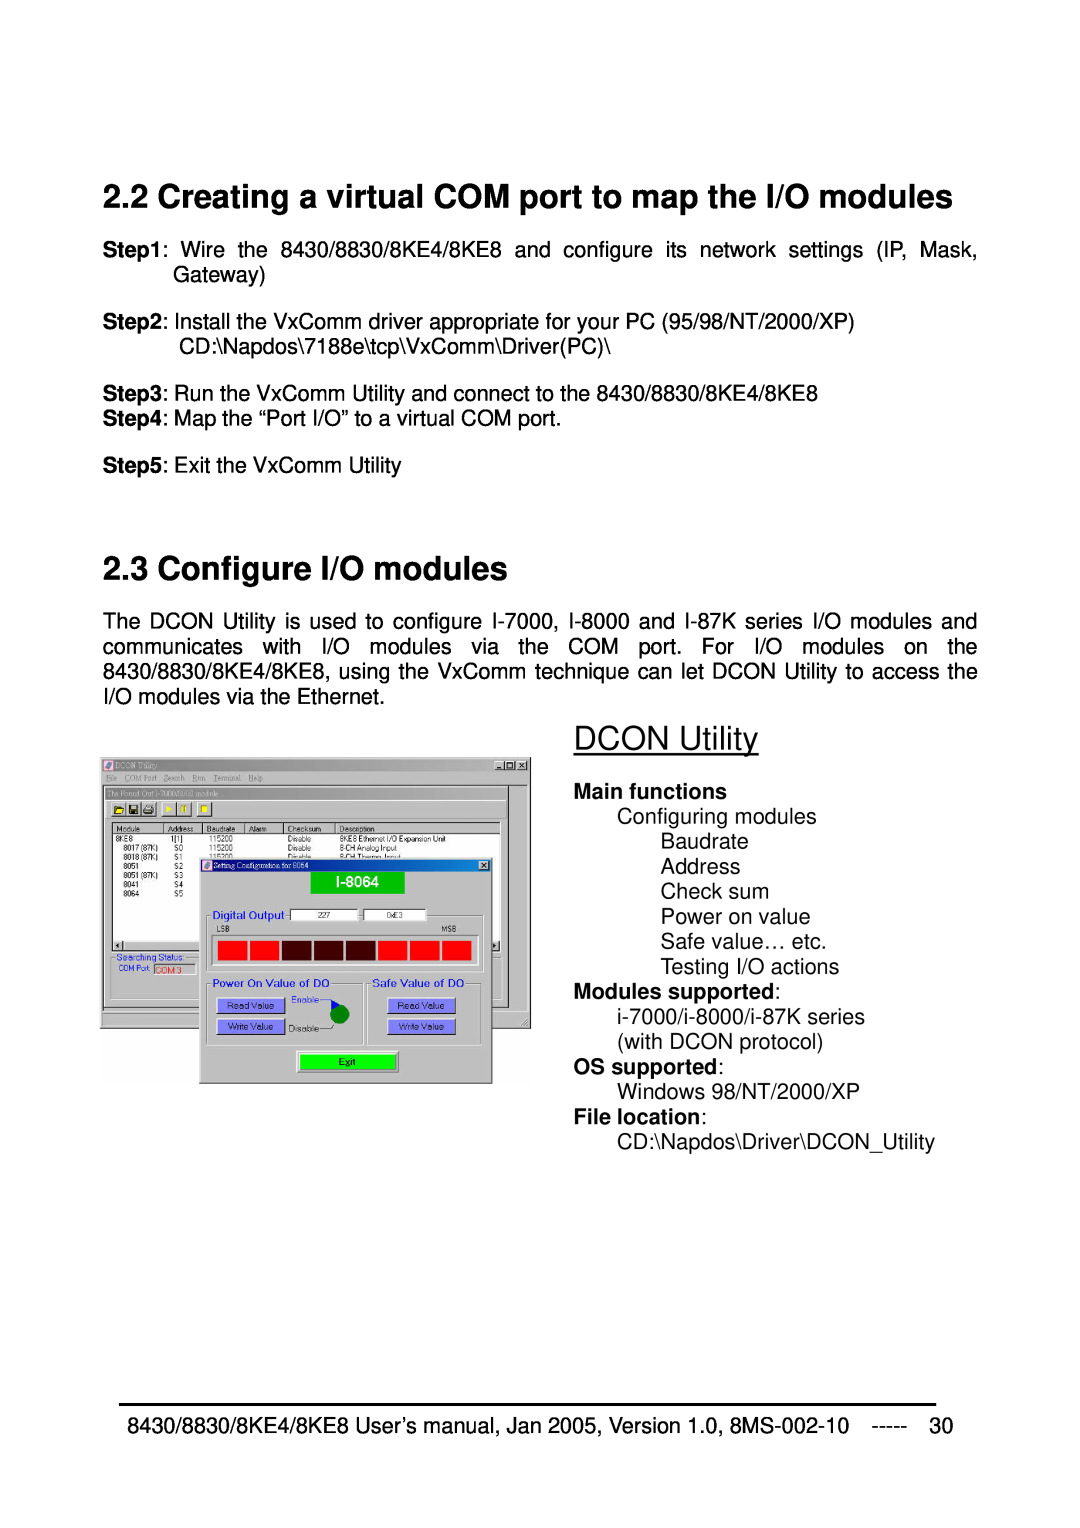 ICP DAS USA 8430, 8KE8, 8KE4, 8830 Creating a virtual COM port to map the I/O modules, Configure I/O modules, DCON Utility 